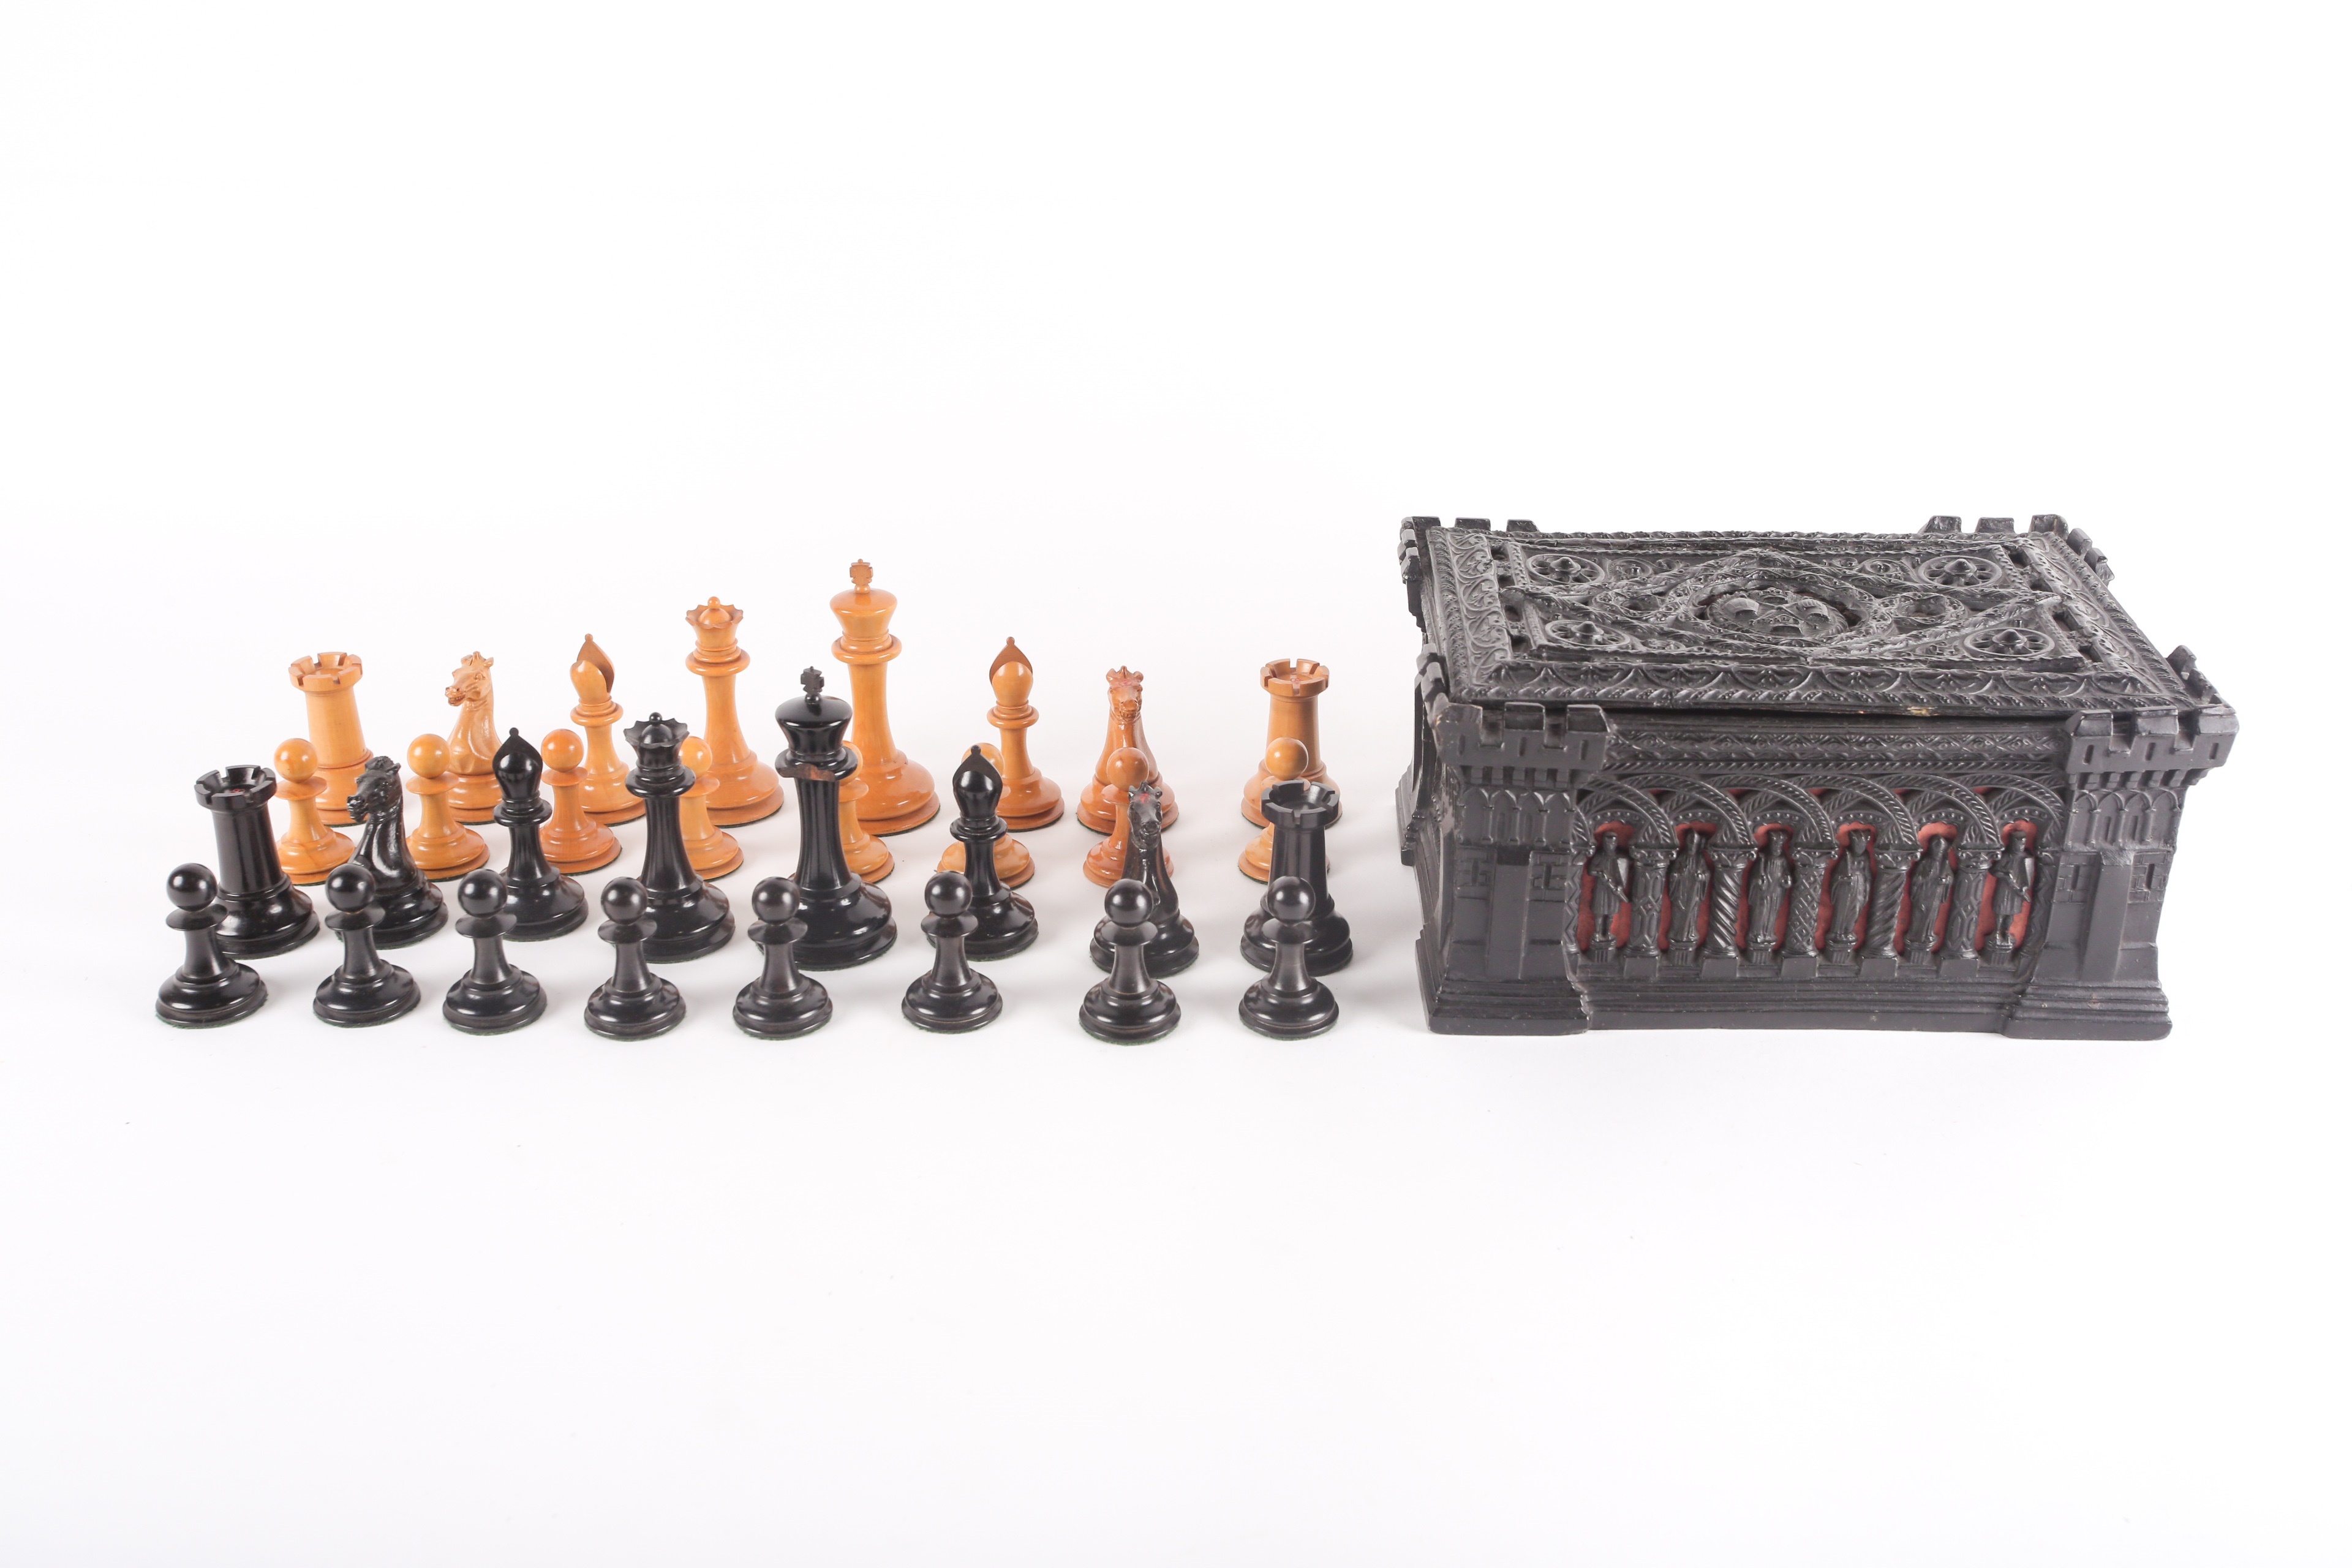 A mid-19th century boxwood and ebony Staunton chess set